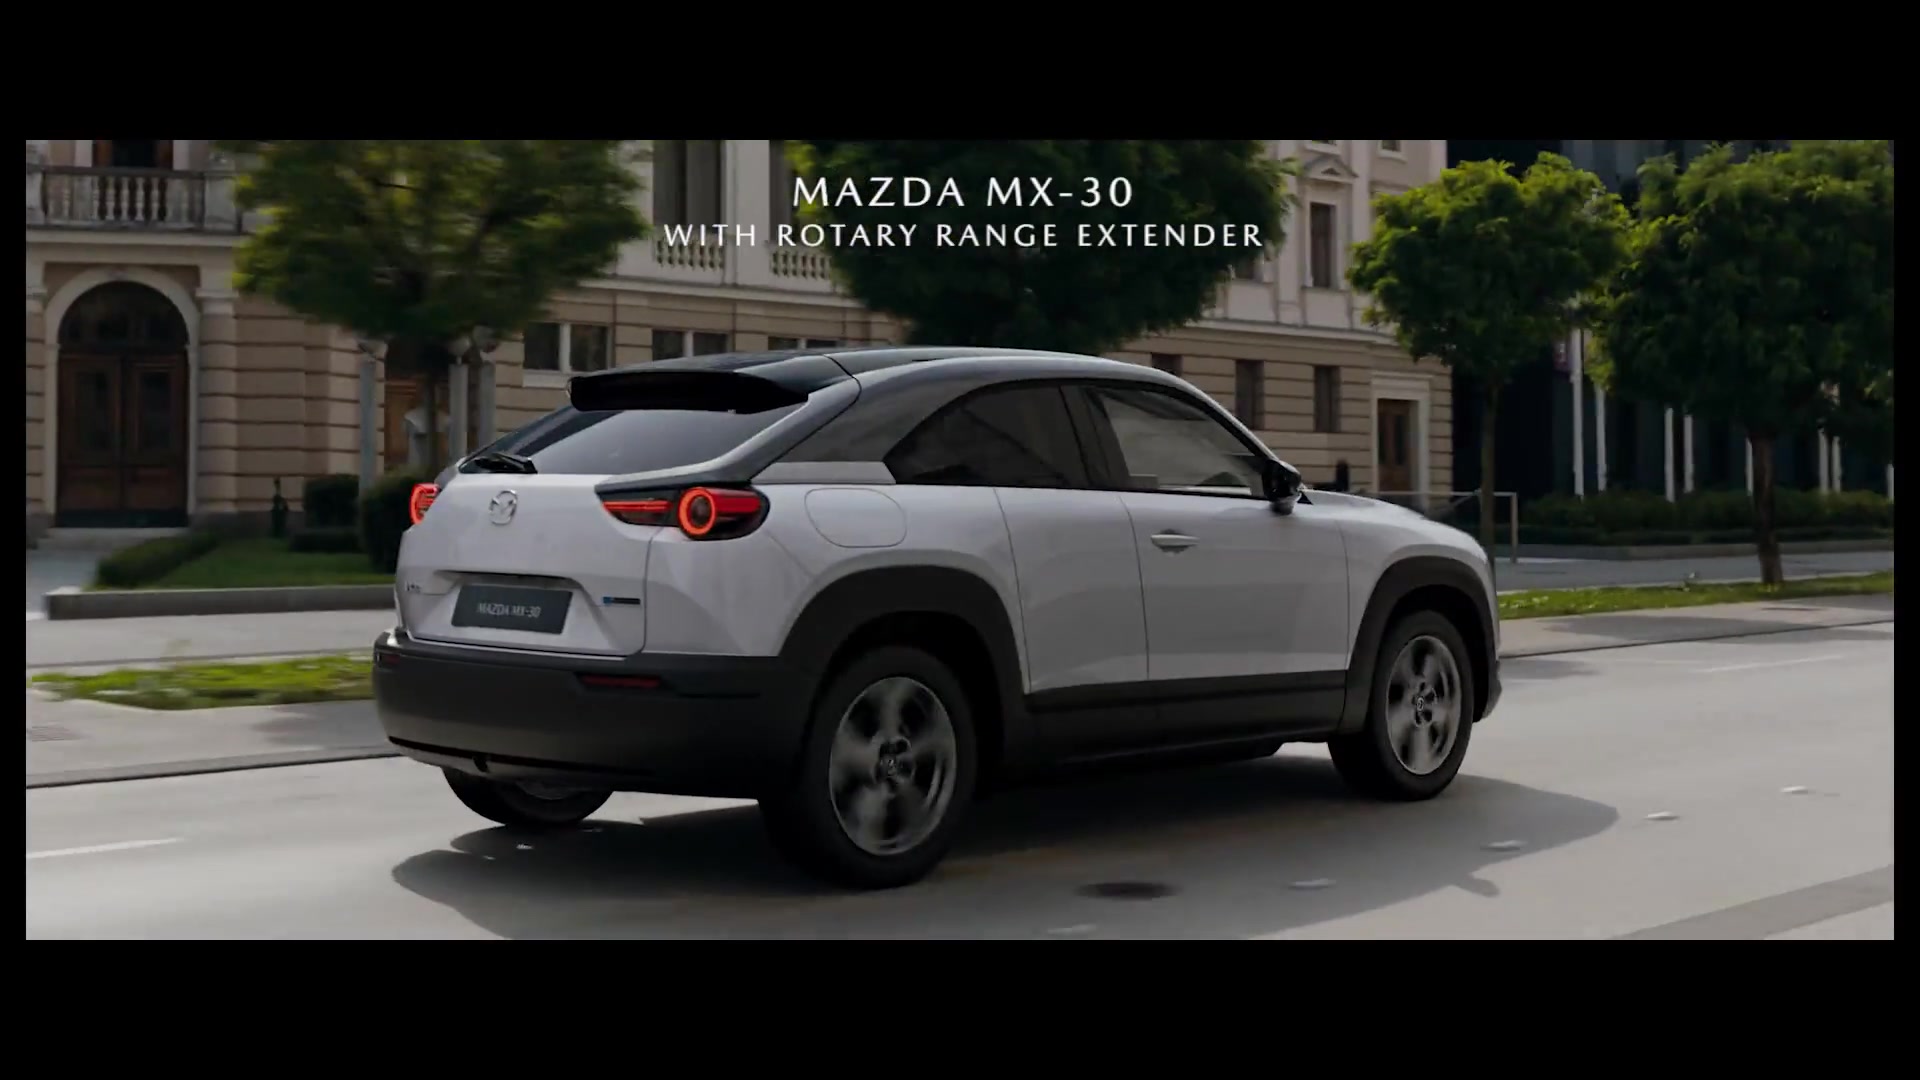 Mazda 100th Anniversary – The Dream Engine